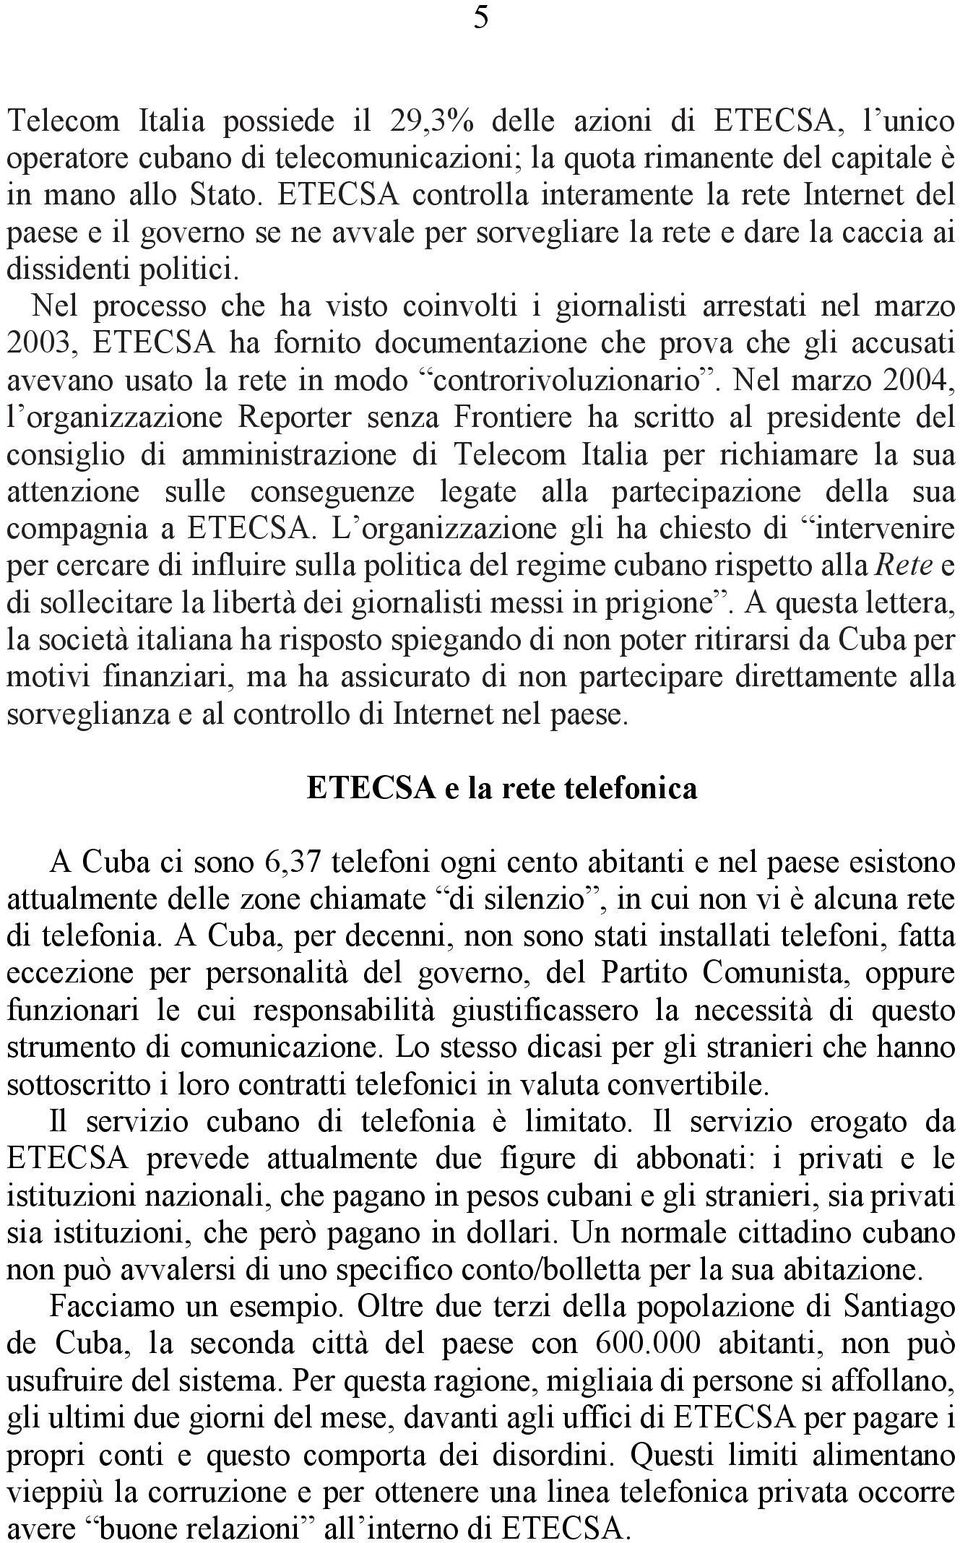 Nel processo che ha visto coinvolti i giornalisti arrestati nel marzo 2003, ETECSA ha fornito documentazione che prova che gli accusati avevano usato la rete in modo controrivoluzionario.